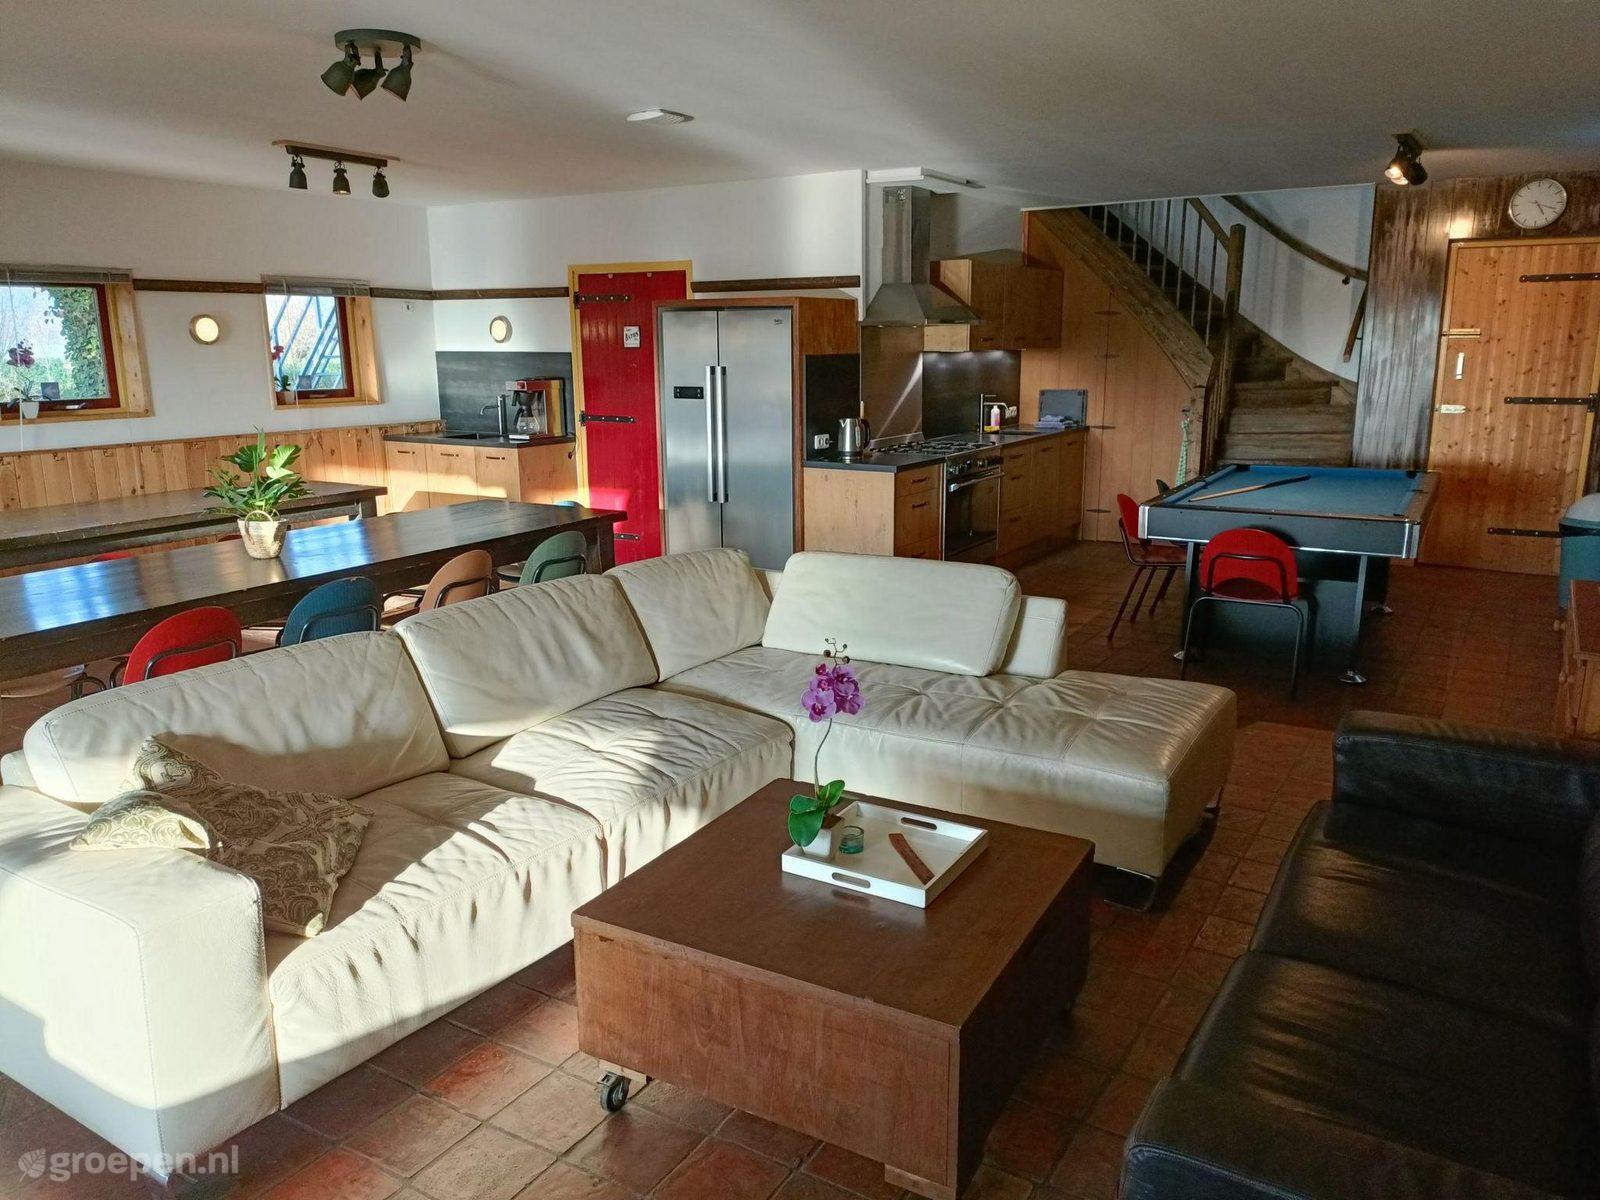 Group accommodation Toldijk